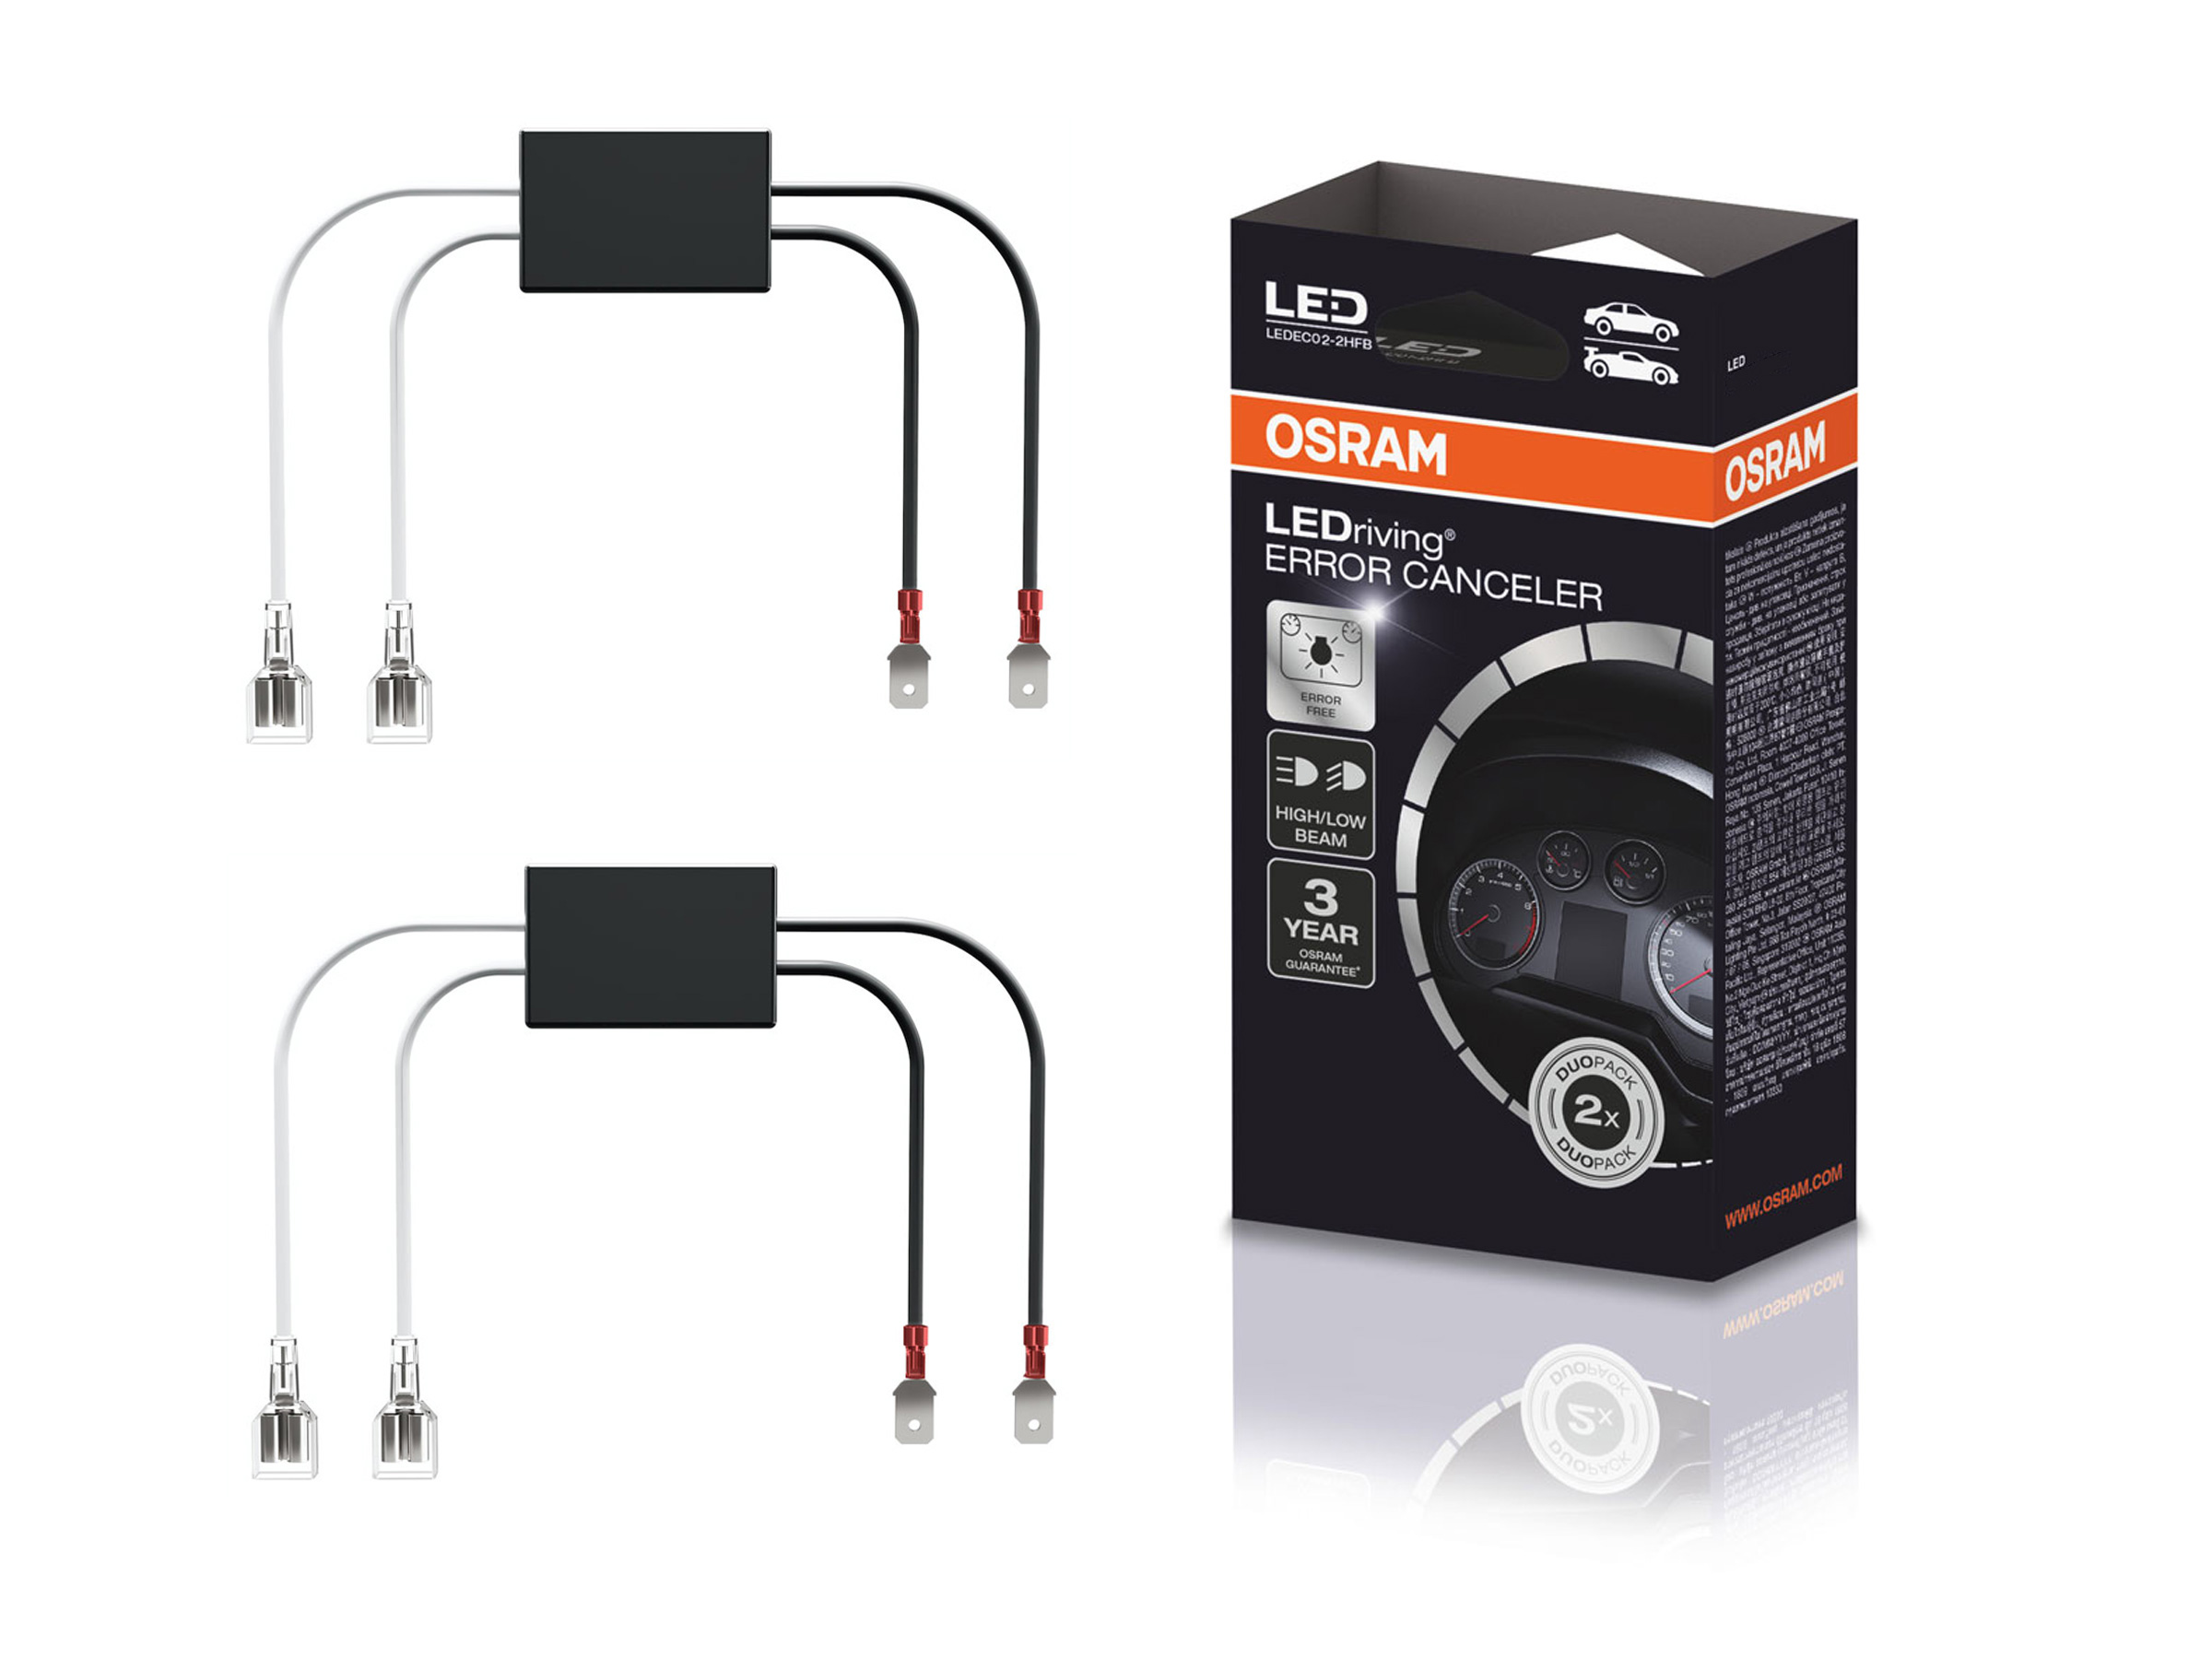 Osram LEDSC02-1 - Kits de Adaptadores Can-Bus H7 v2-1 para NIGHT